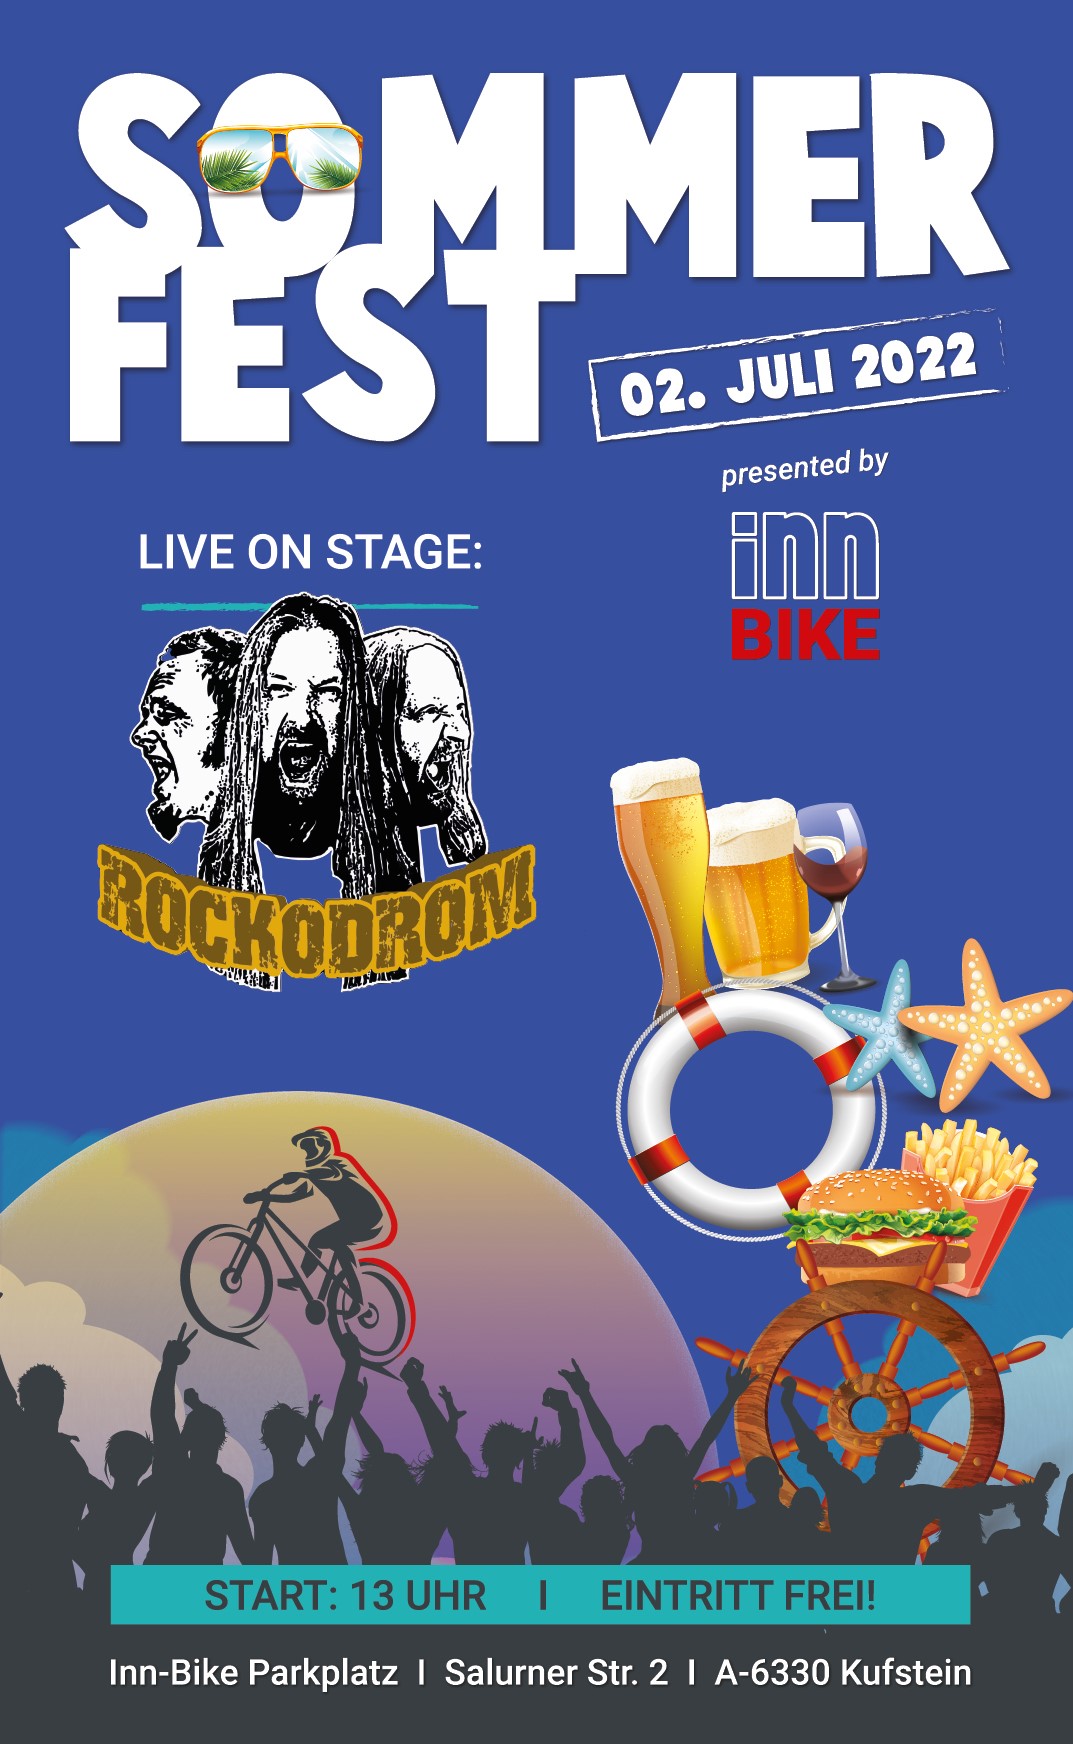 Social_Media_Sommerfest_2022_Inn-Bike_1080x1920px_06-2022_1